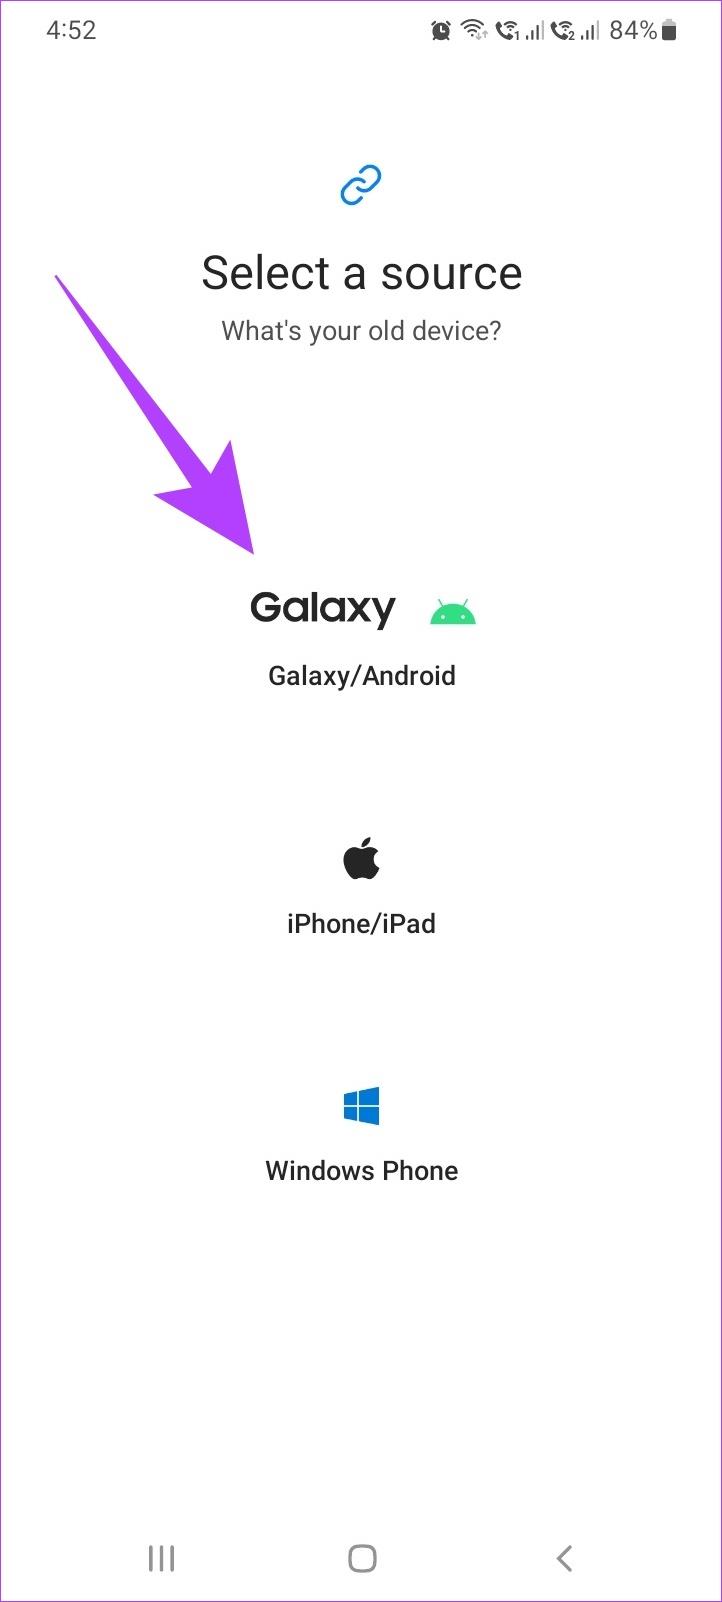 Jak używać Samsung Smart Switch do tworzenia kopii zapasowych i przesyłania danych na telefonach Galaxy